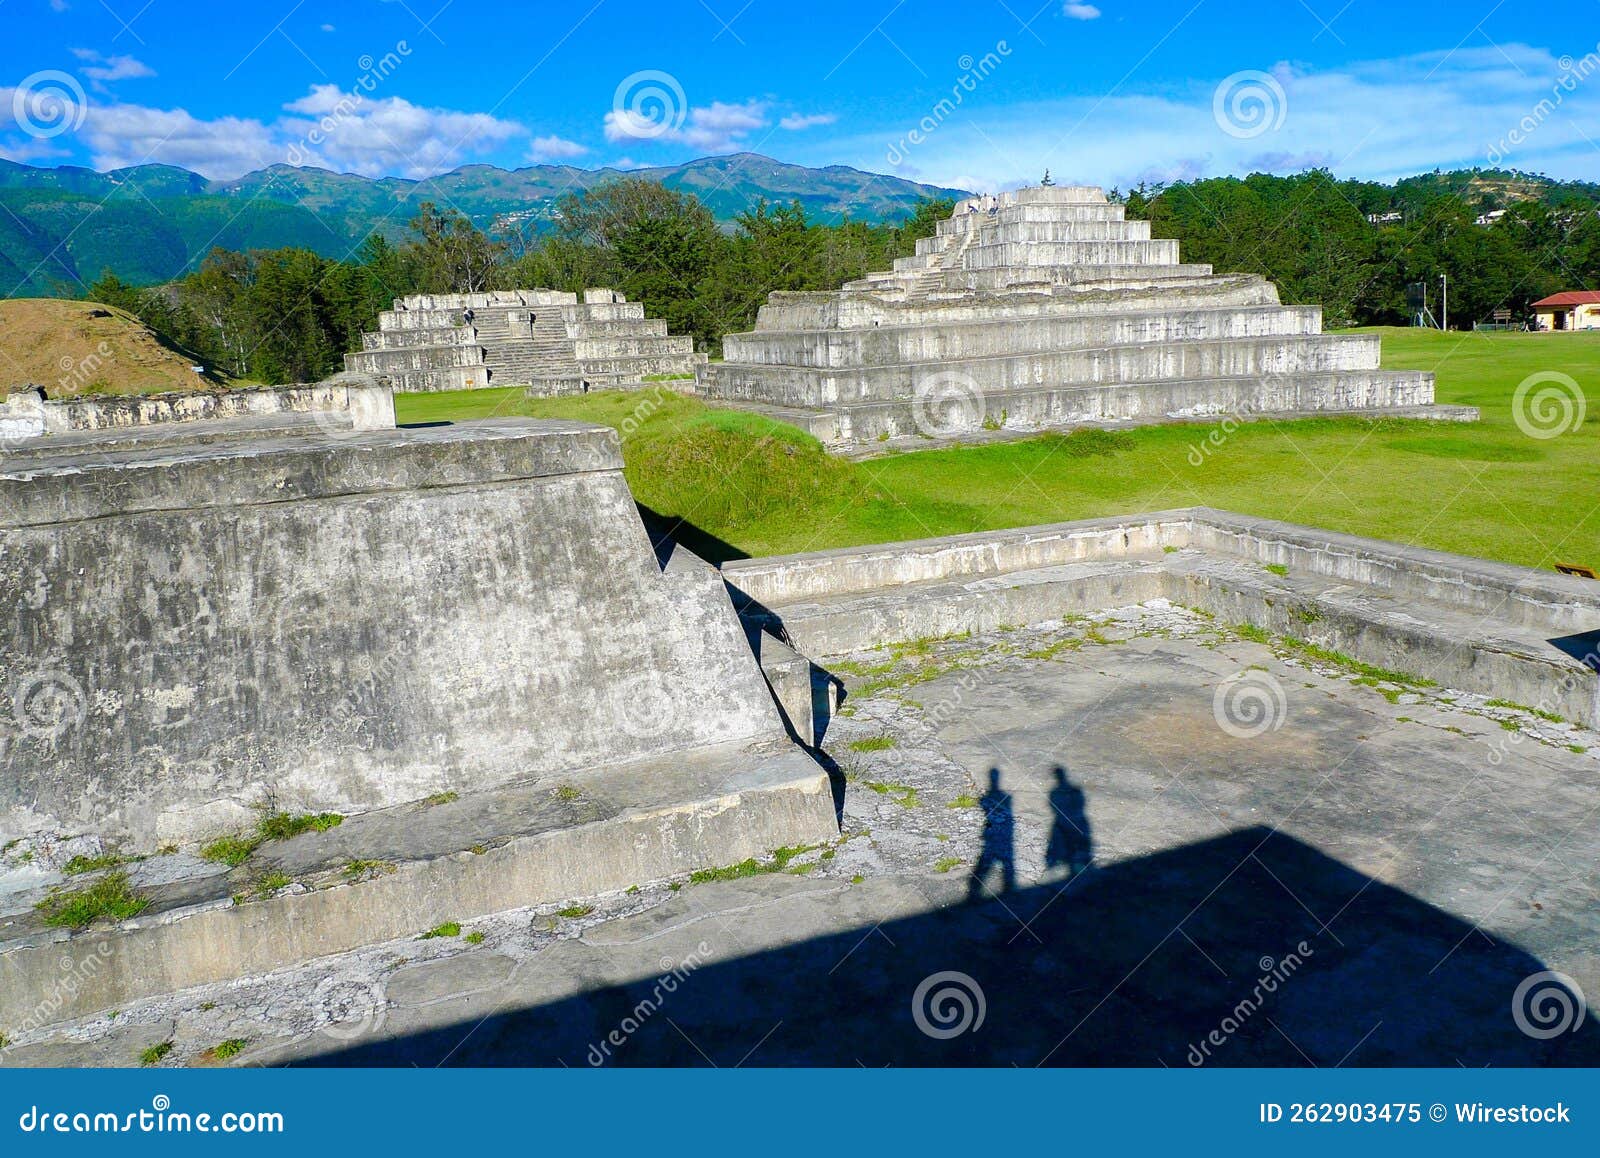 zaculeu mayan ruins in huehuetenango